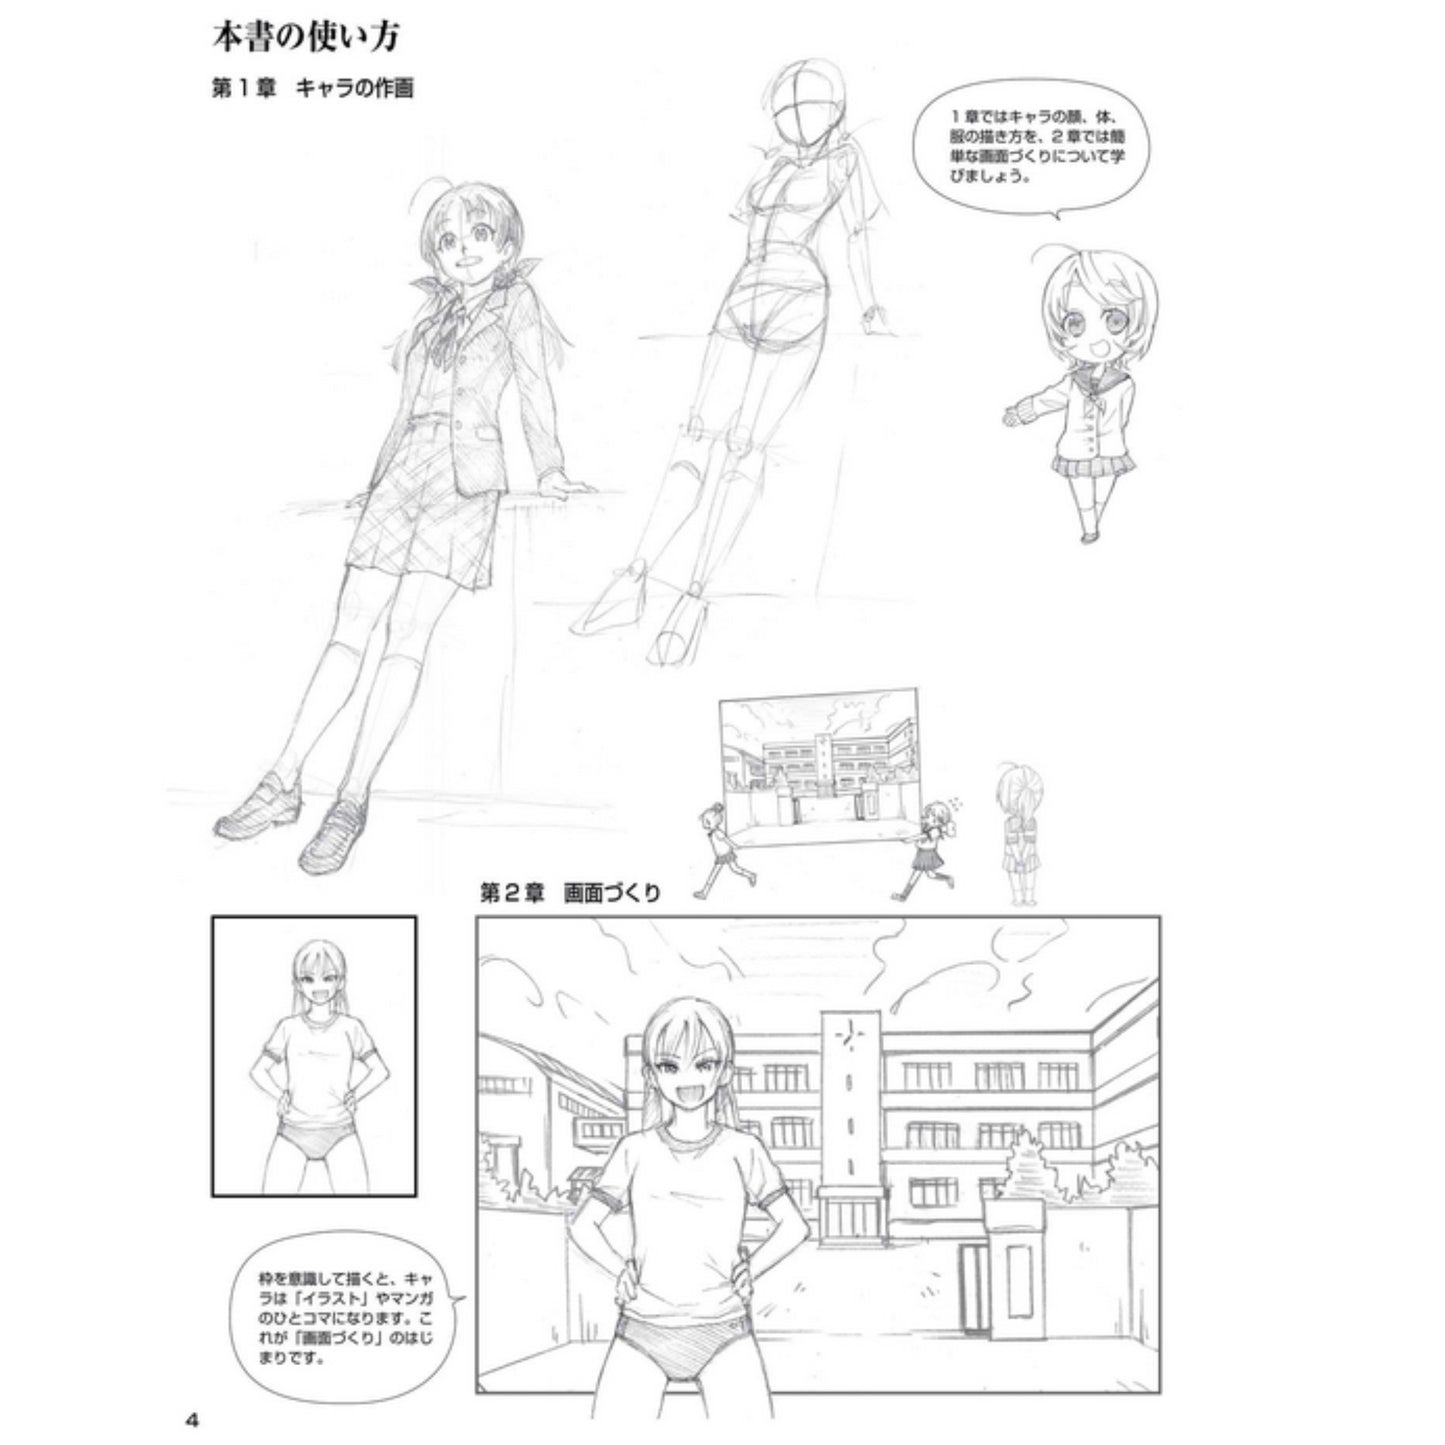 How to draw - jap. Zeichenbuch - School Life Manga